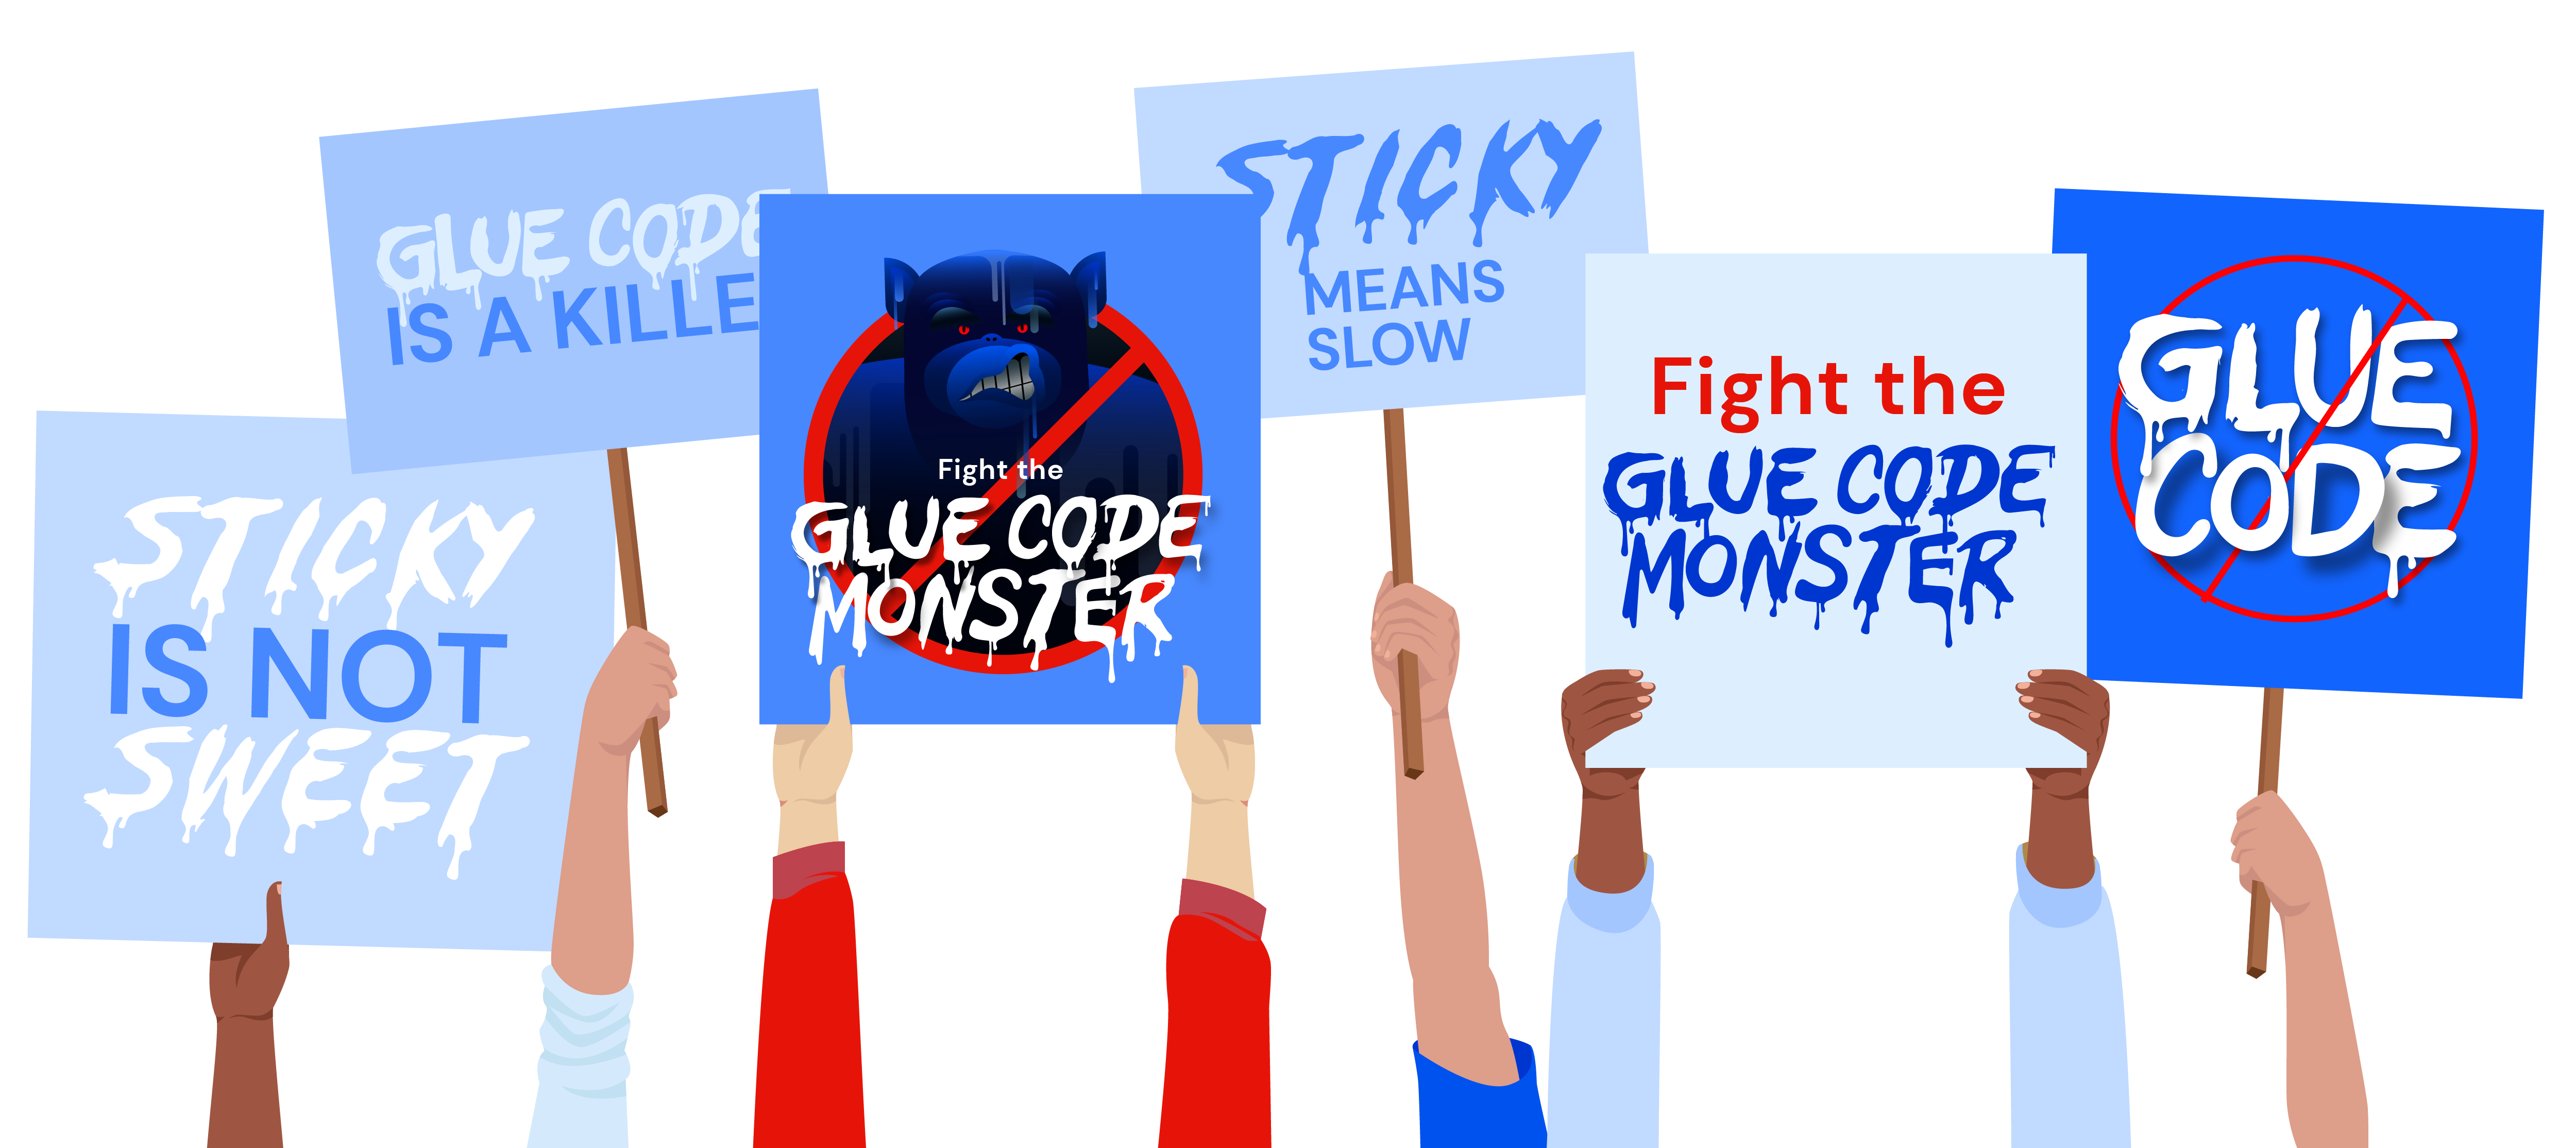 GlueCode PROTEST